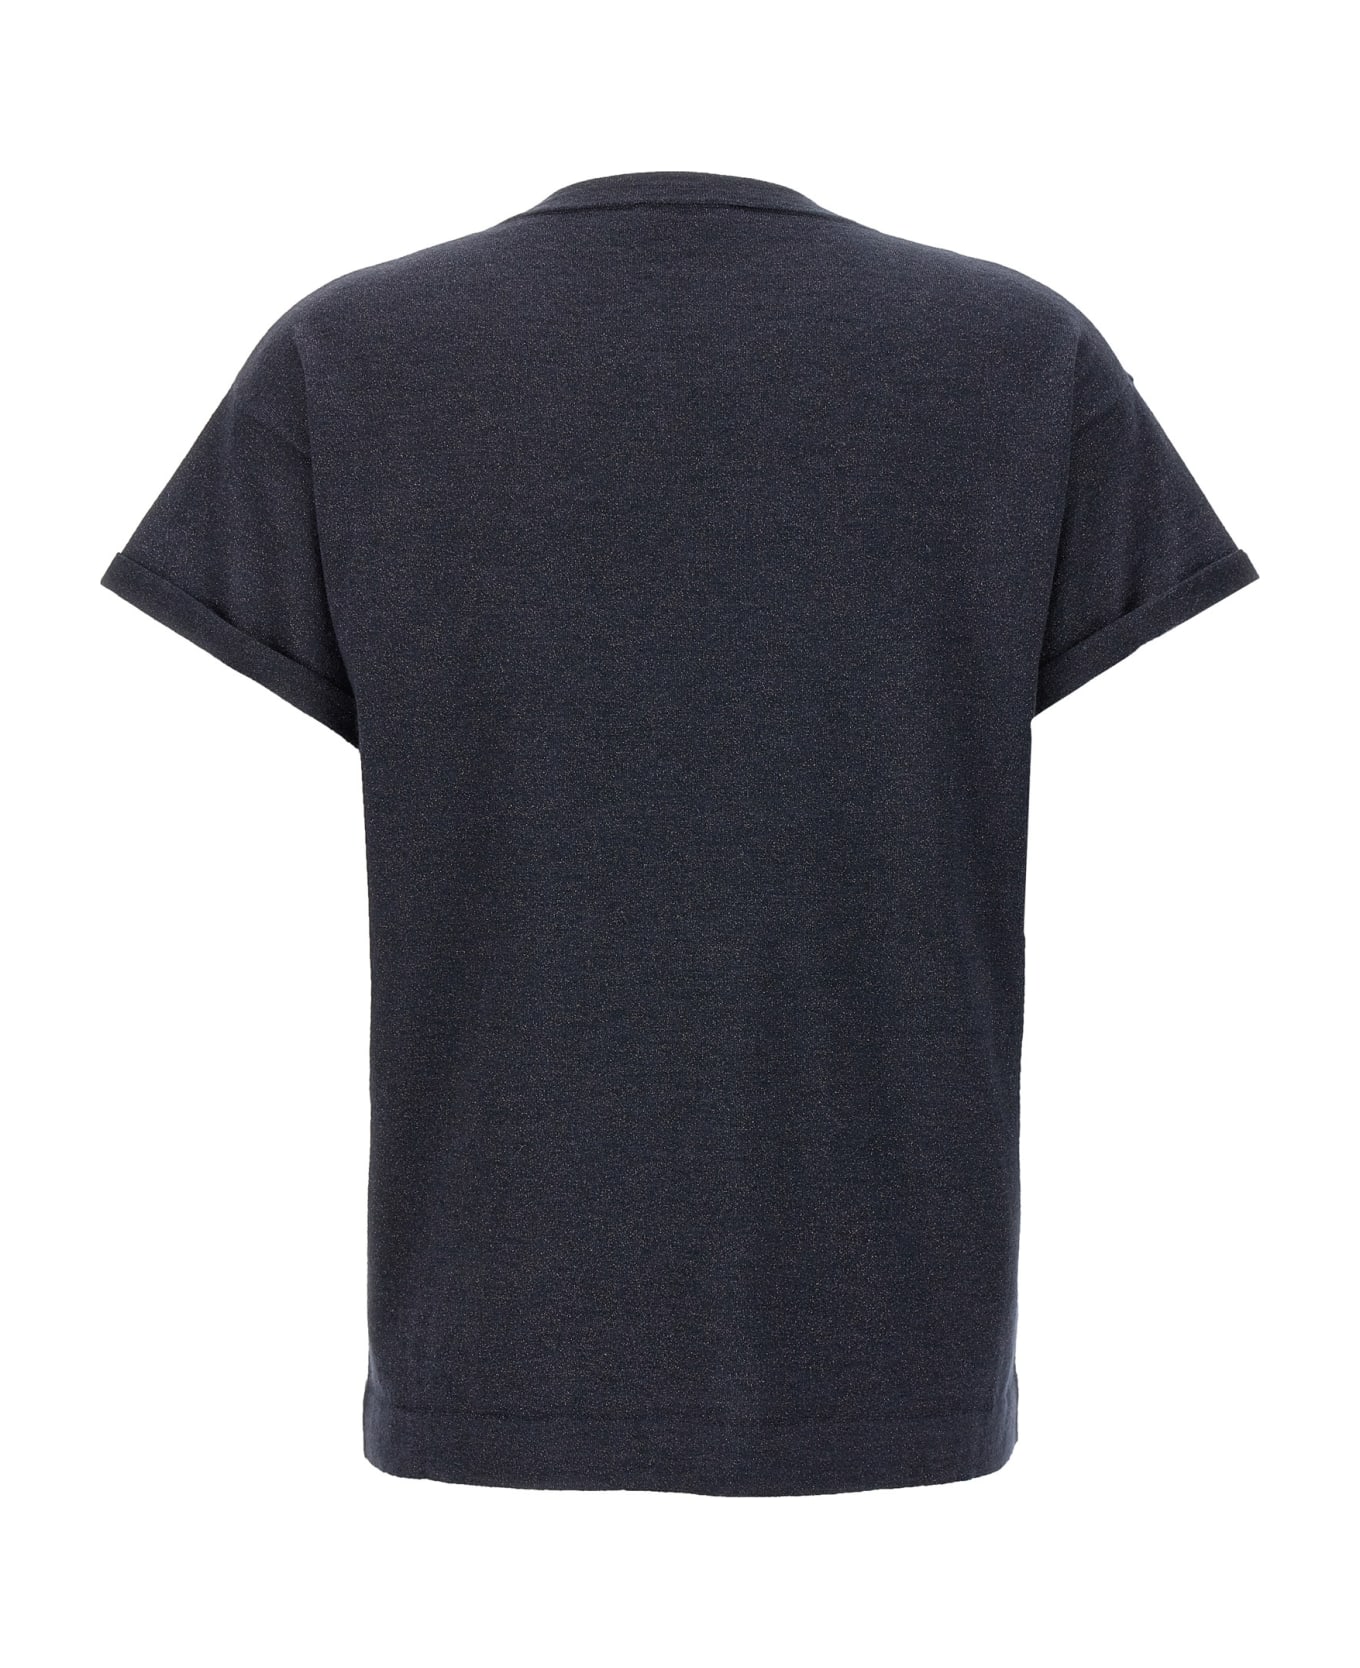 Brunello Cucinelli Lurex Sweater - Blue Tシャツ